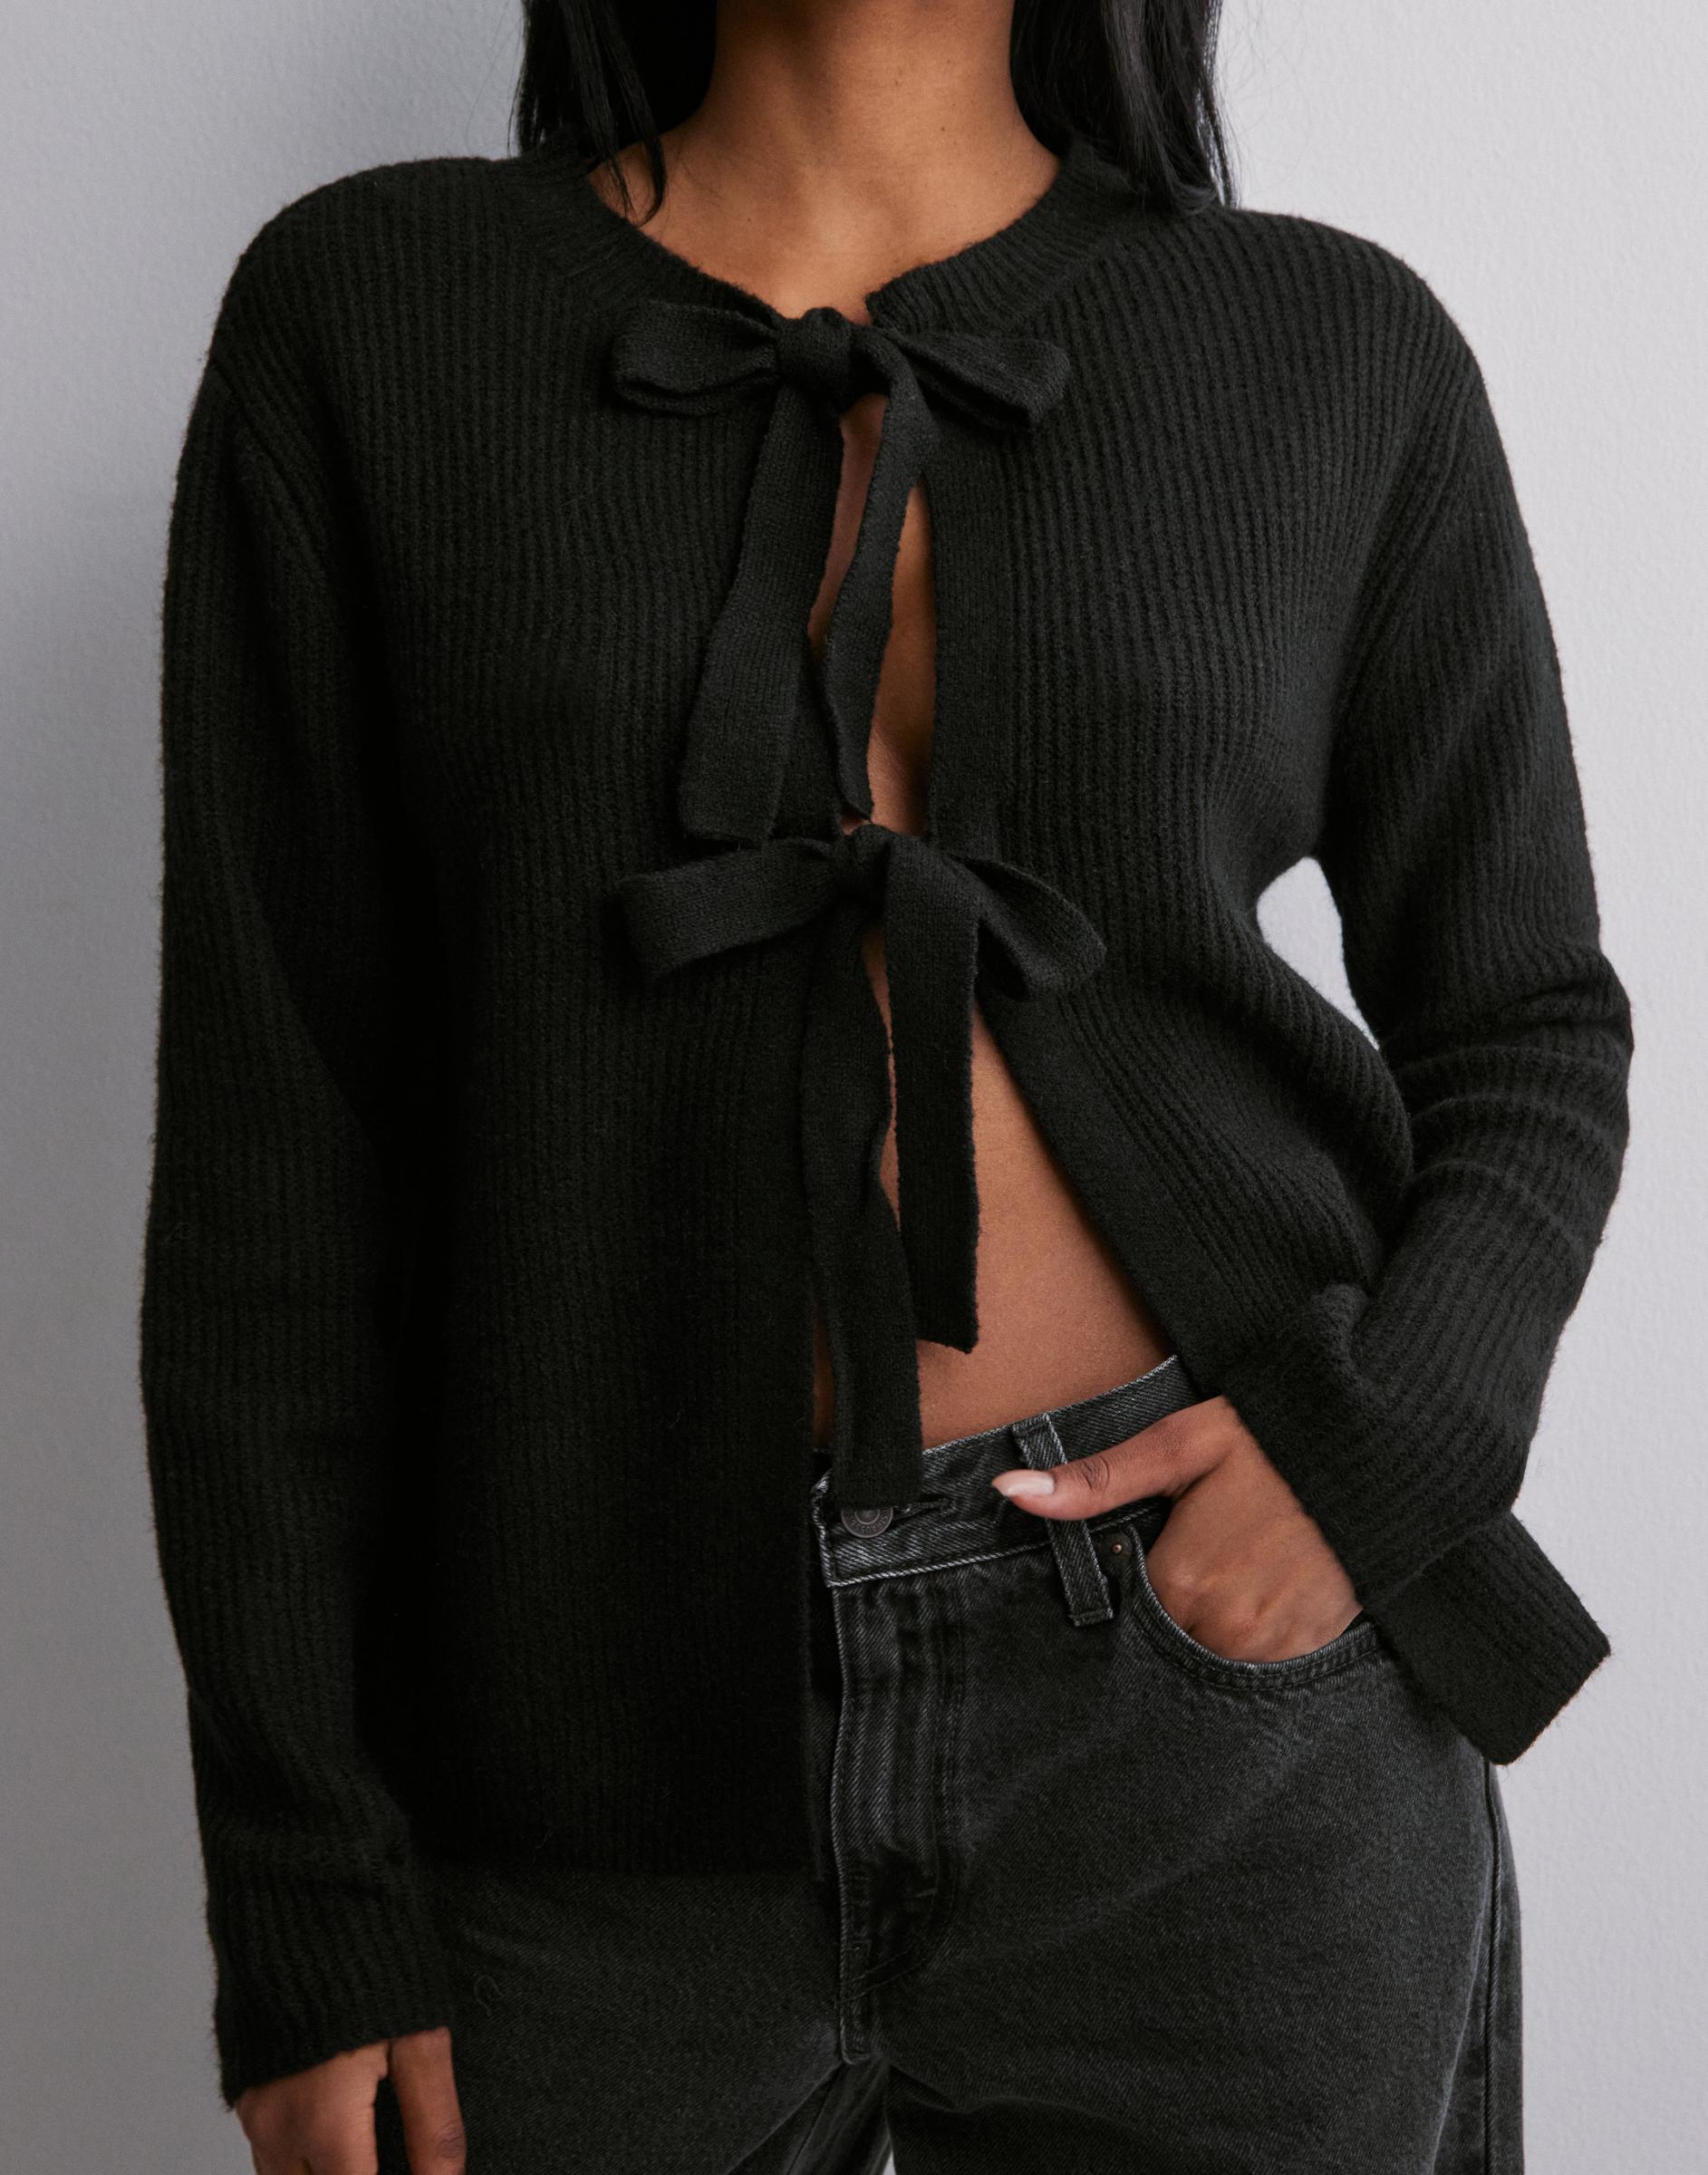 czarny wiązany sweter kokardy długi rękaw